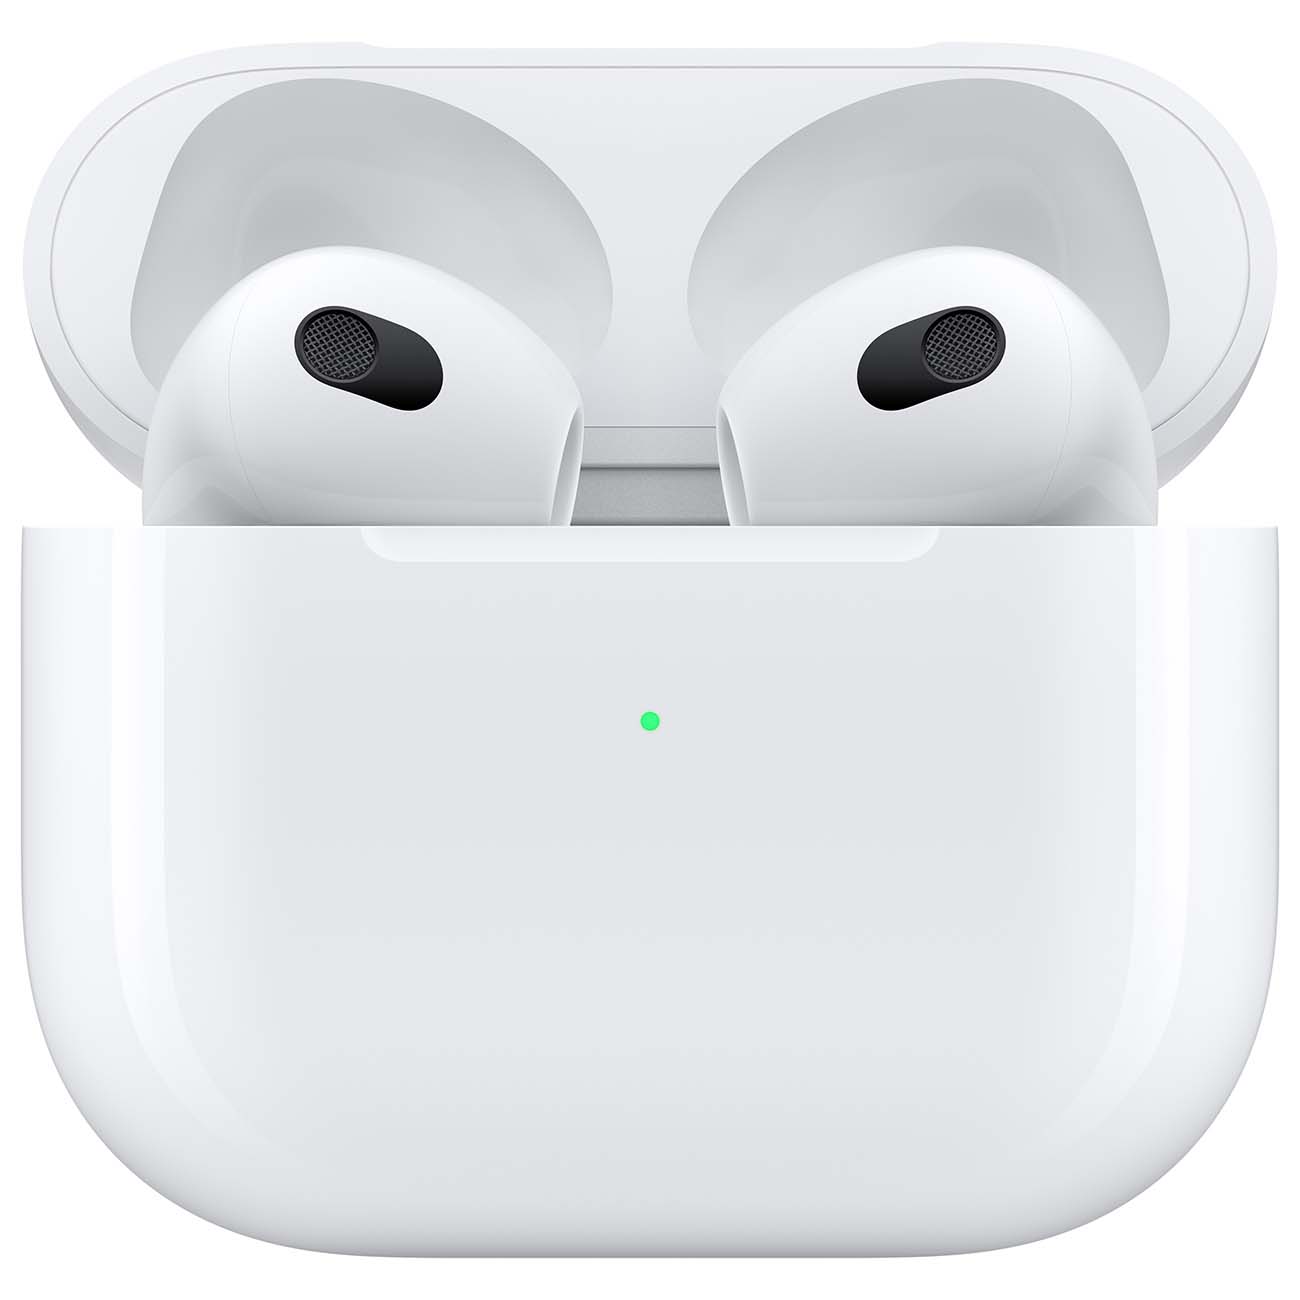 Купить наушники apple airpods 3-го поколения Apple AirPods в официальном магазине Apple, Samsung, Xiaomi. iPixel.ru Купить, заказ, кредит, рассрочка, отзывы,  характеристики, цена,  фотографии, в подарок.